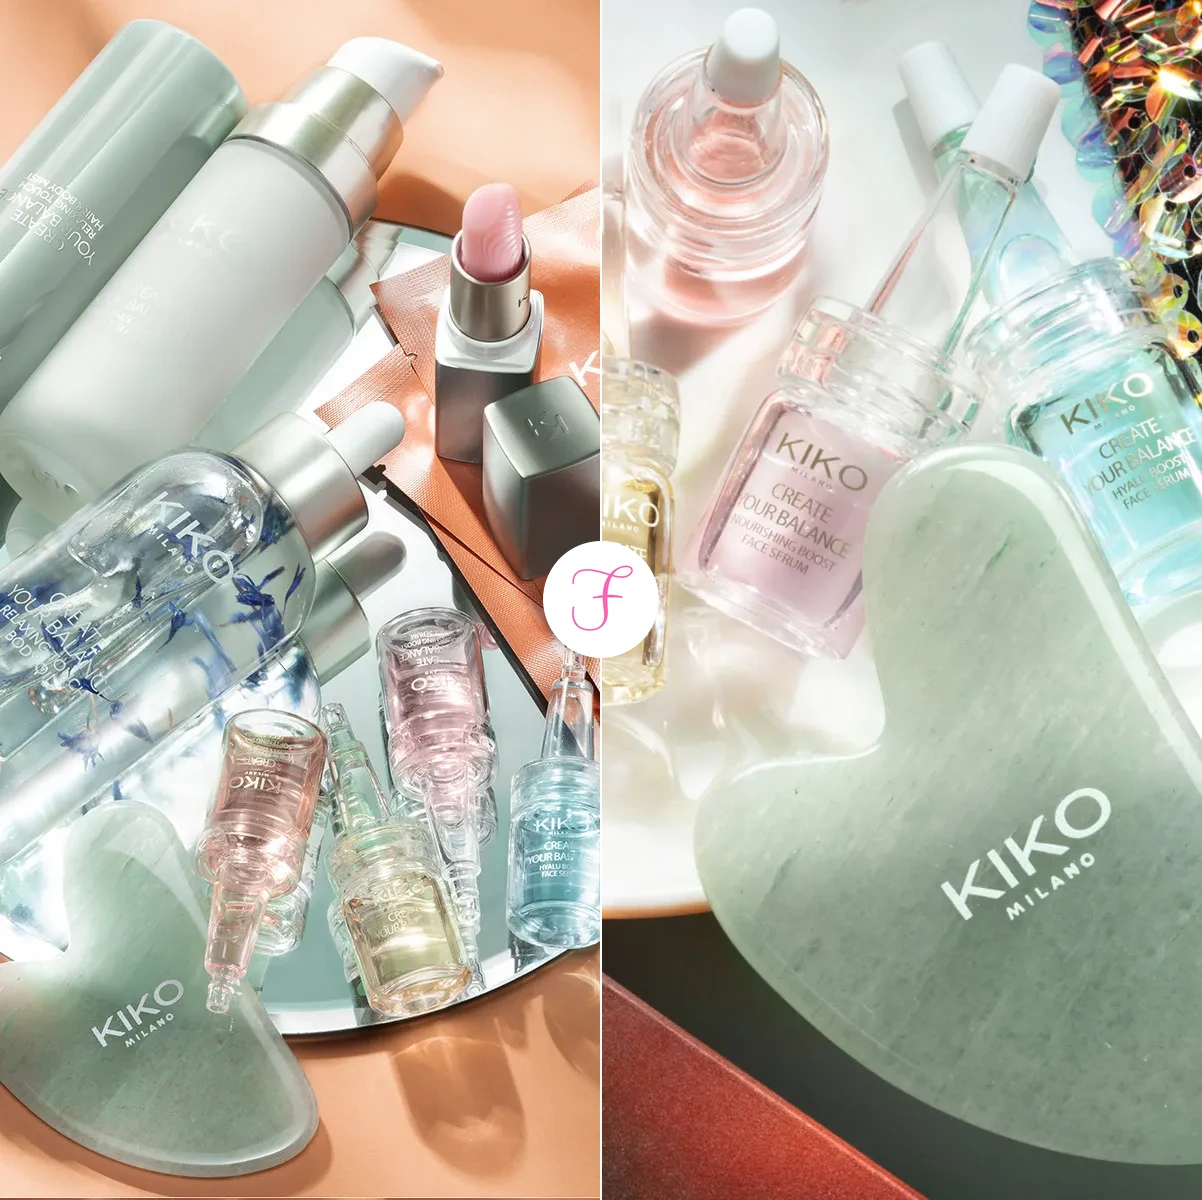 kiko-create-your-balance-olio-corpo